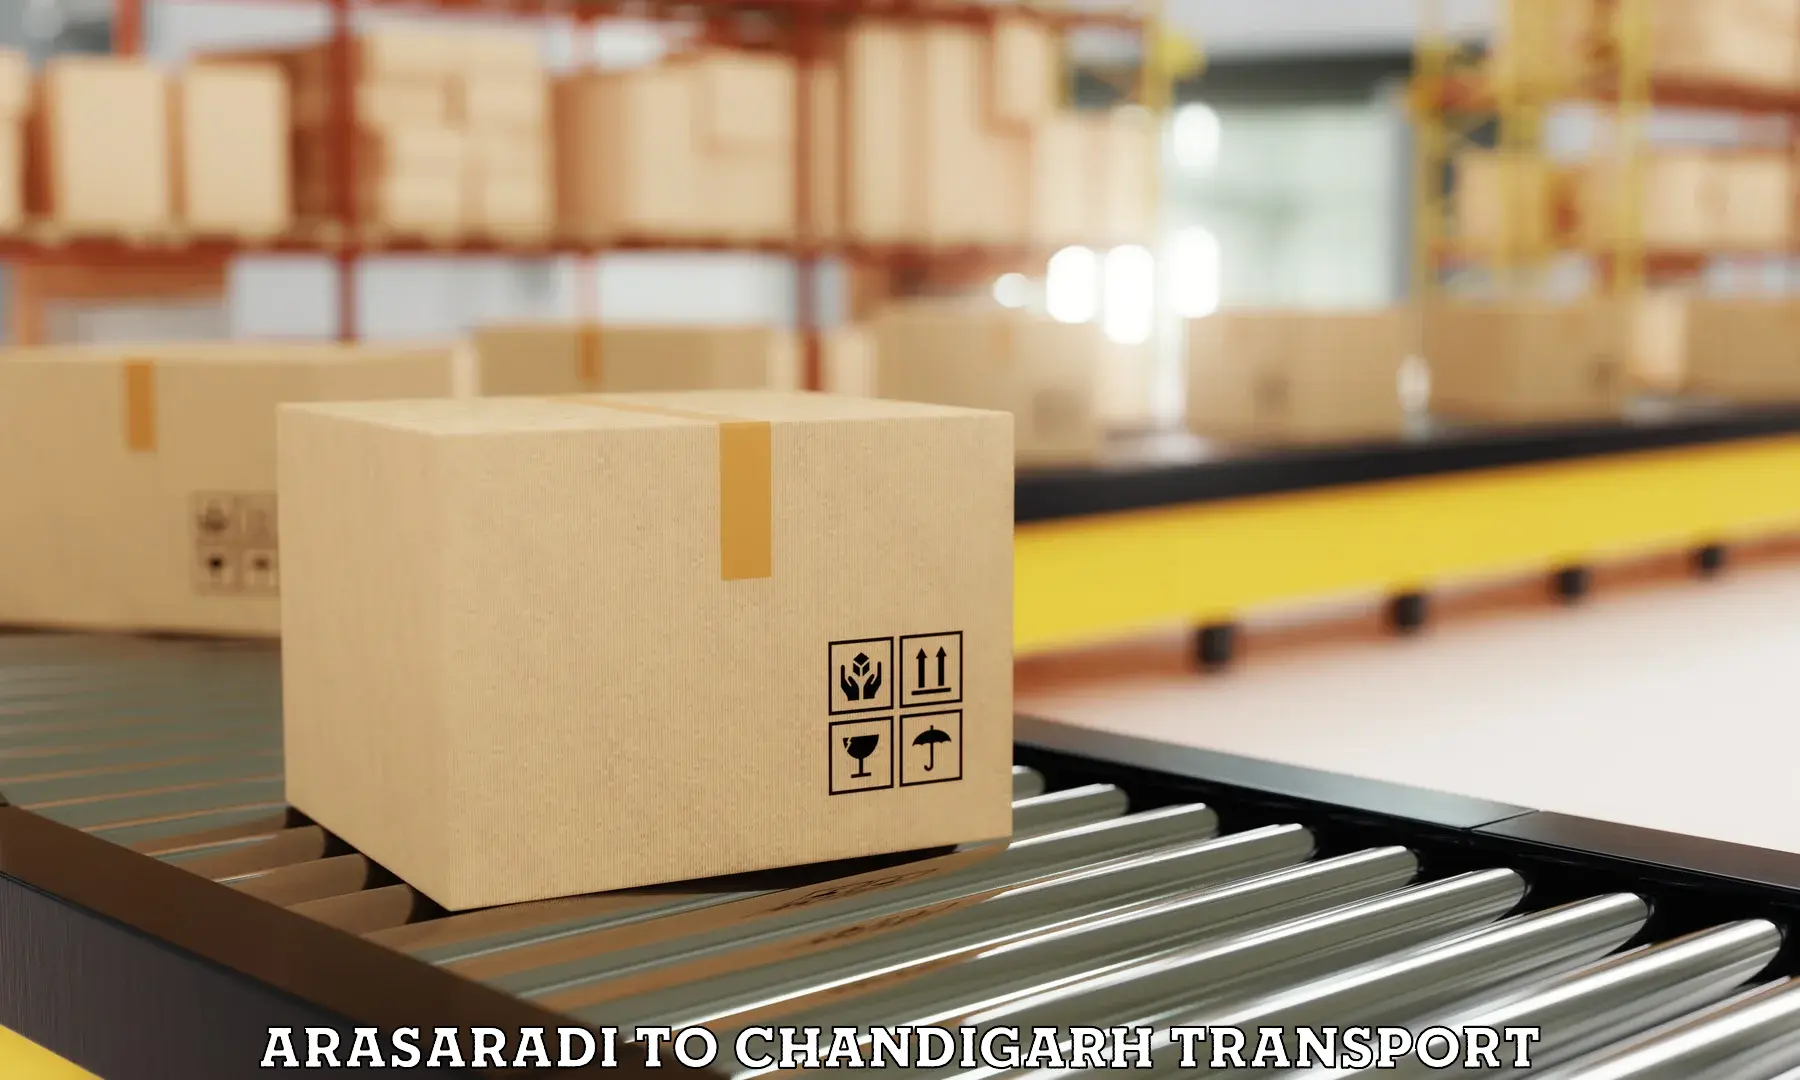 Shipping partner Arasaradi to Chandigarh